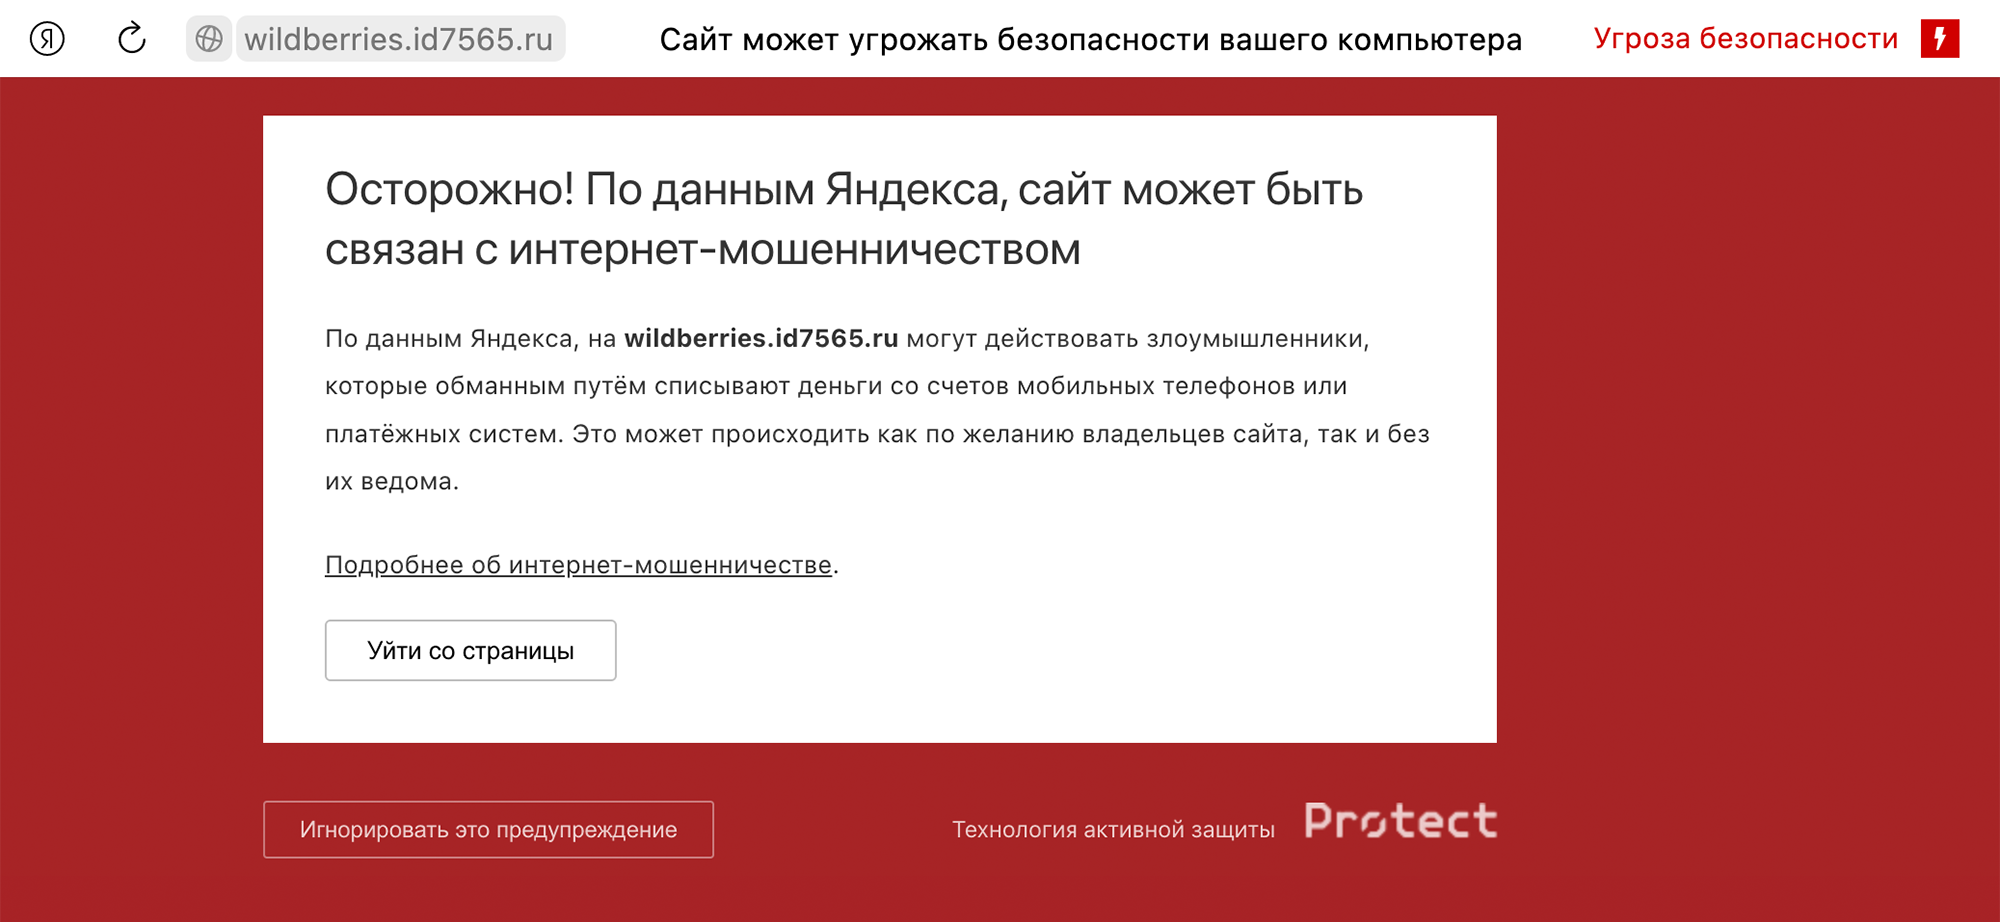 Если открыть ссылку на поддельный сайт в «Яндекс⁠-⁠браузере», он предупредит о мошенничестве. Поэтому мошенники придумывают всяческие отговорки: якобы на «Яндекс» наложили санкции или у них какой⁠-⁠то сбой